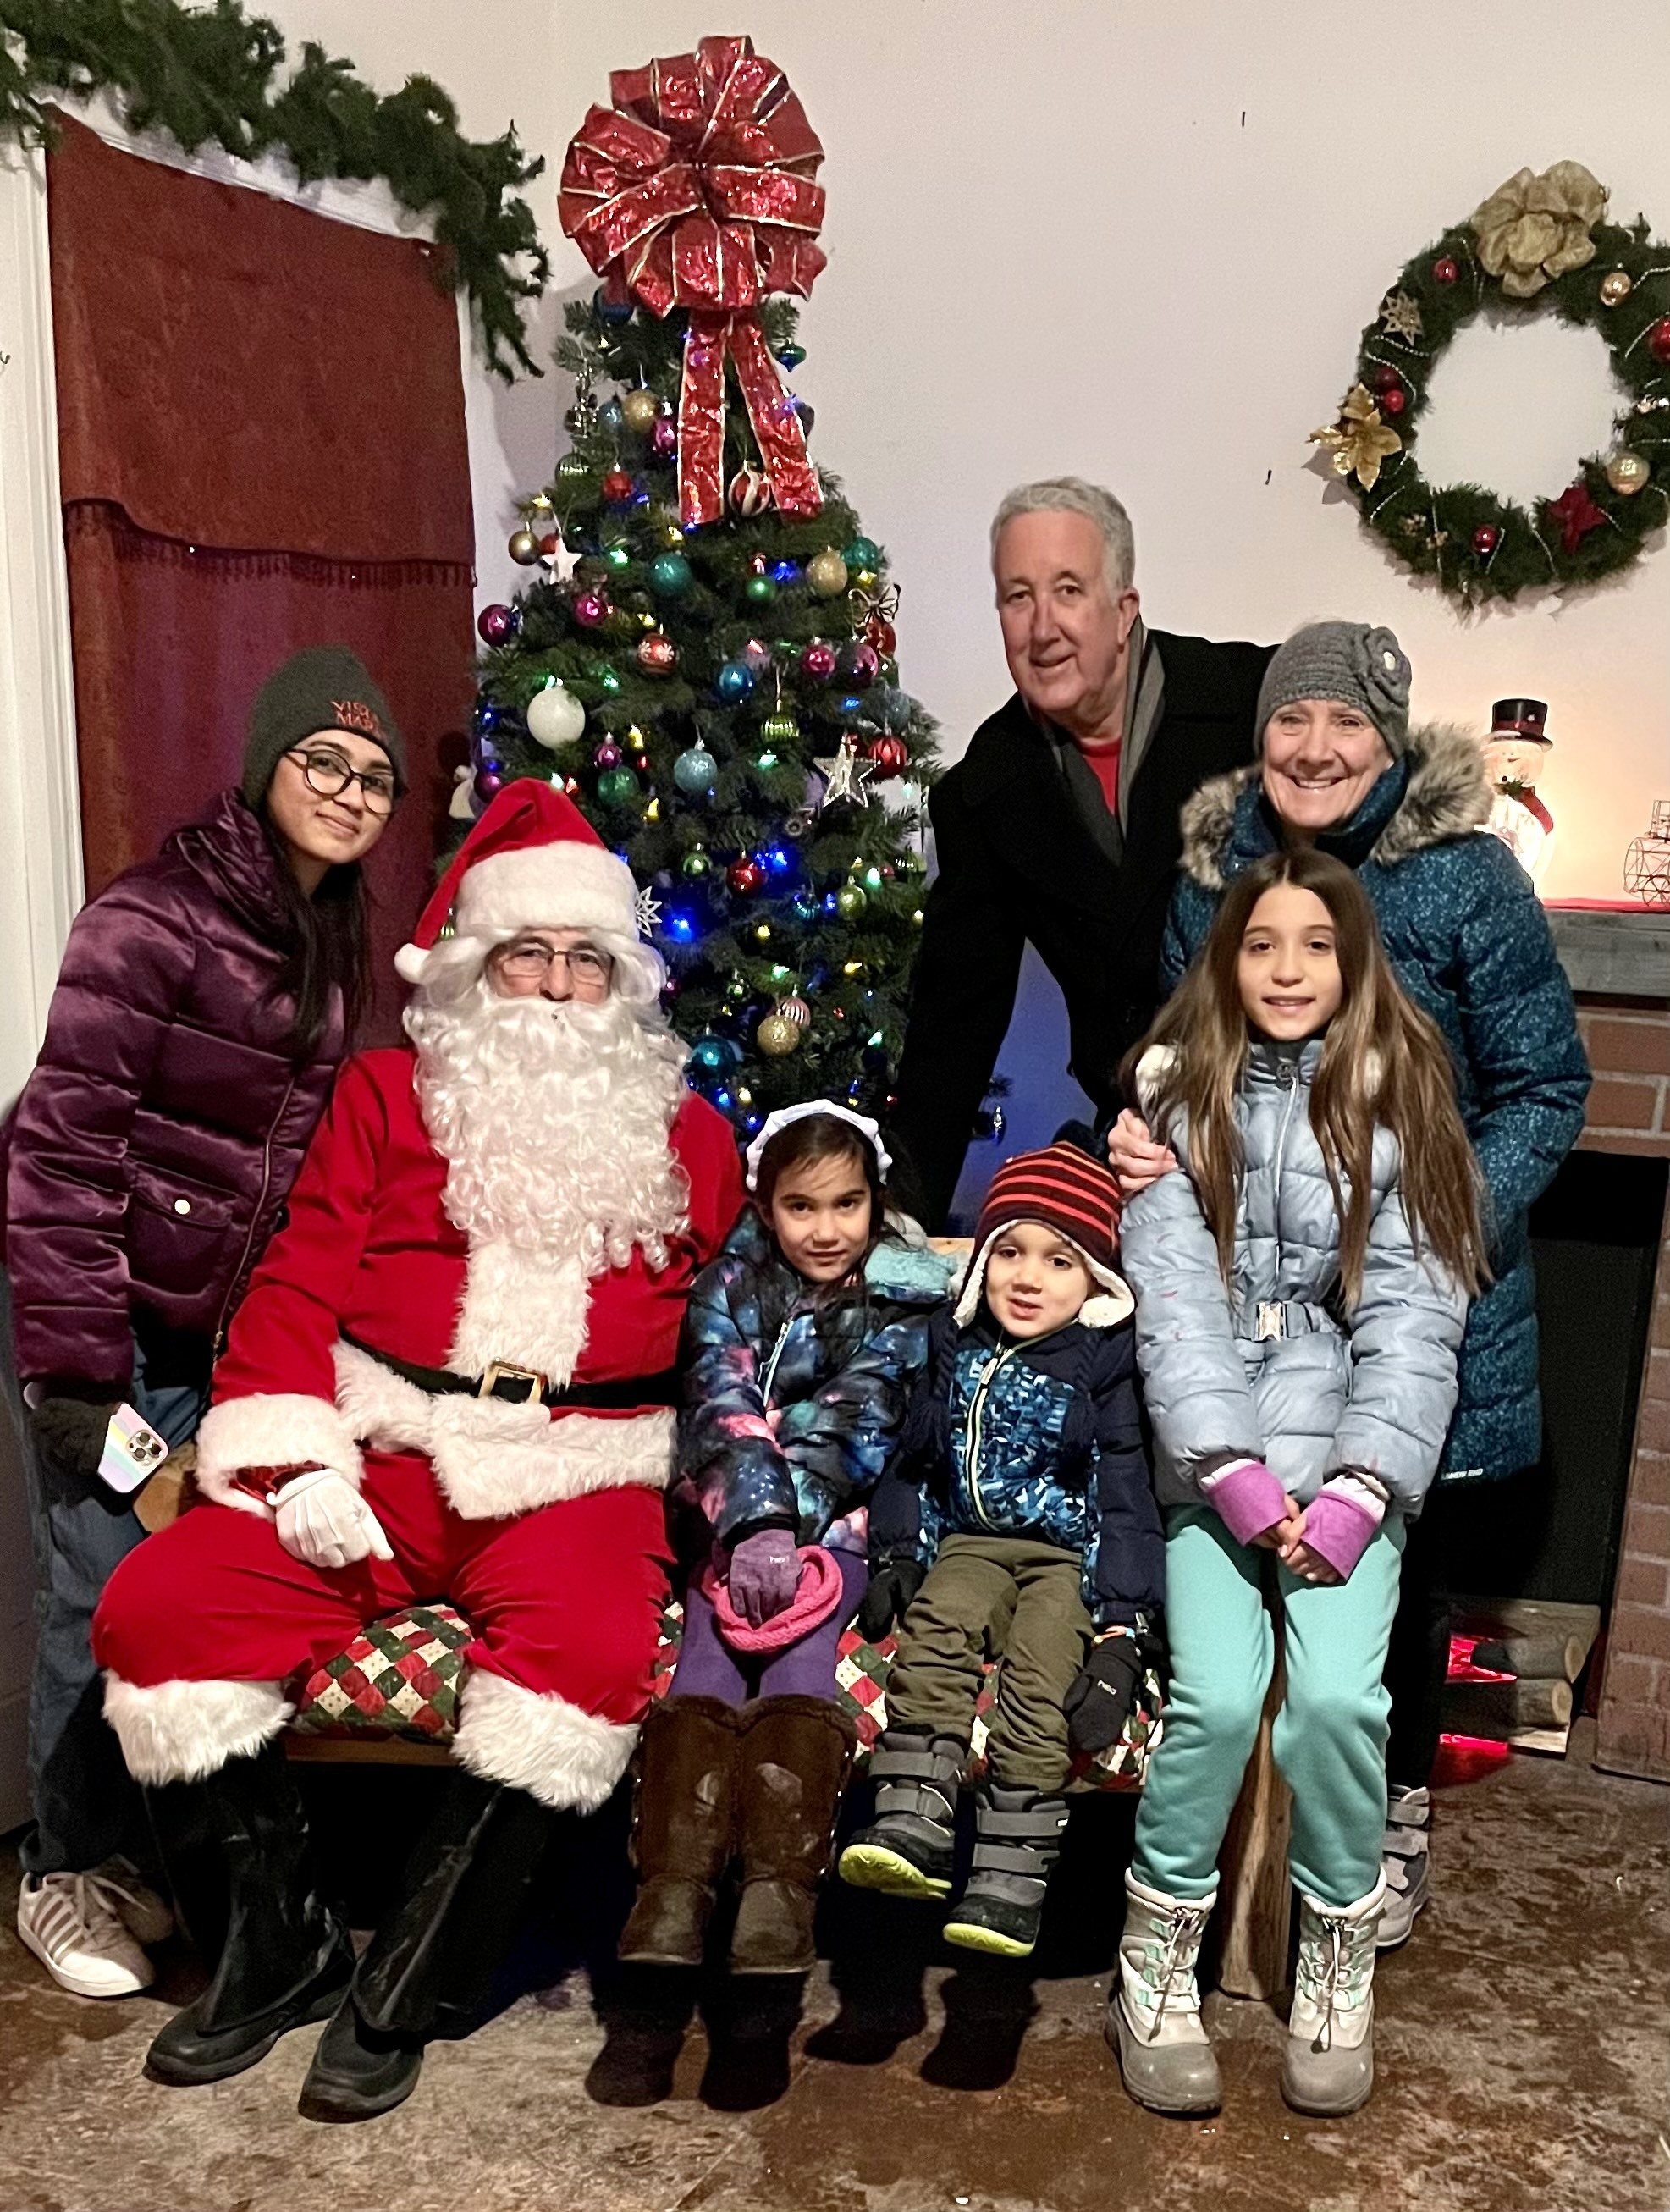 Sereena and her host family posing with Santa